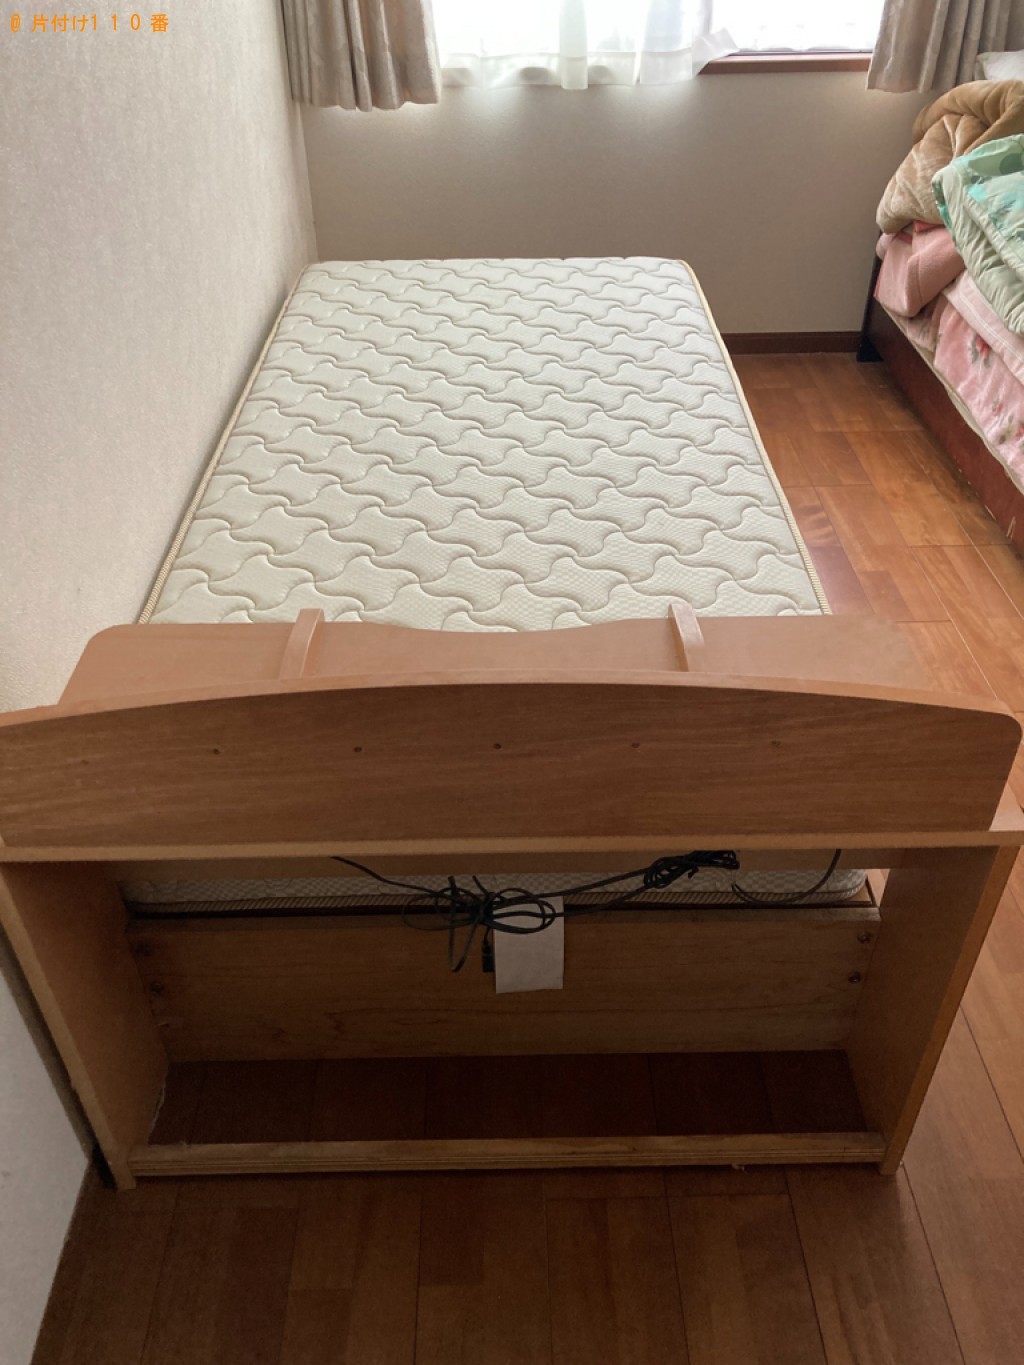 【静岡市】マットレス付きシングルベッド、ショーケースの回収・処分